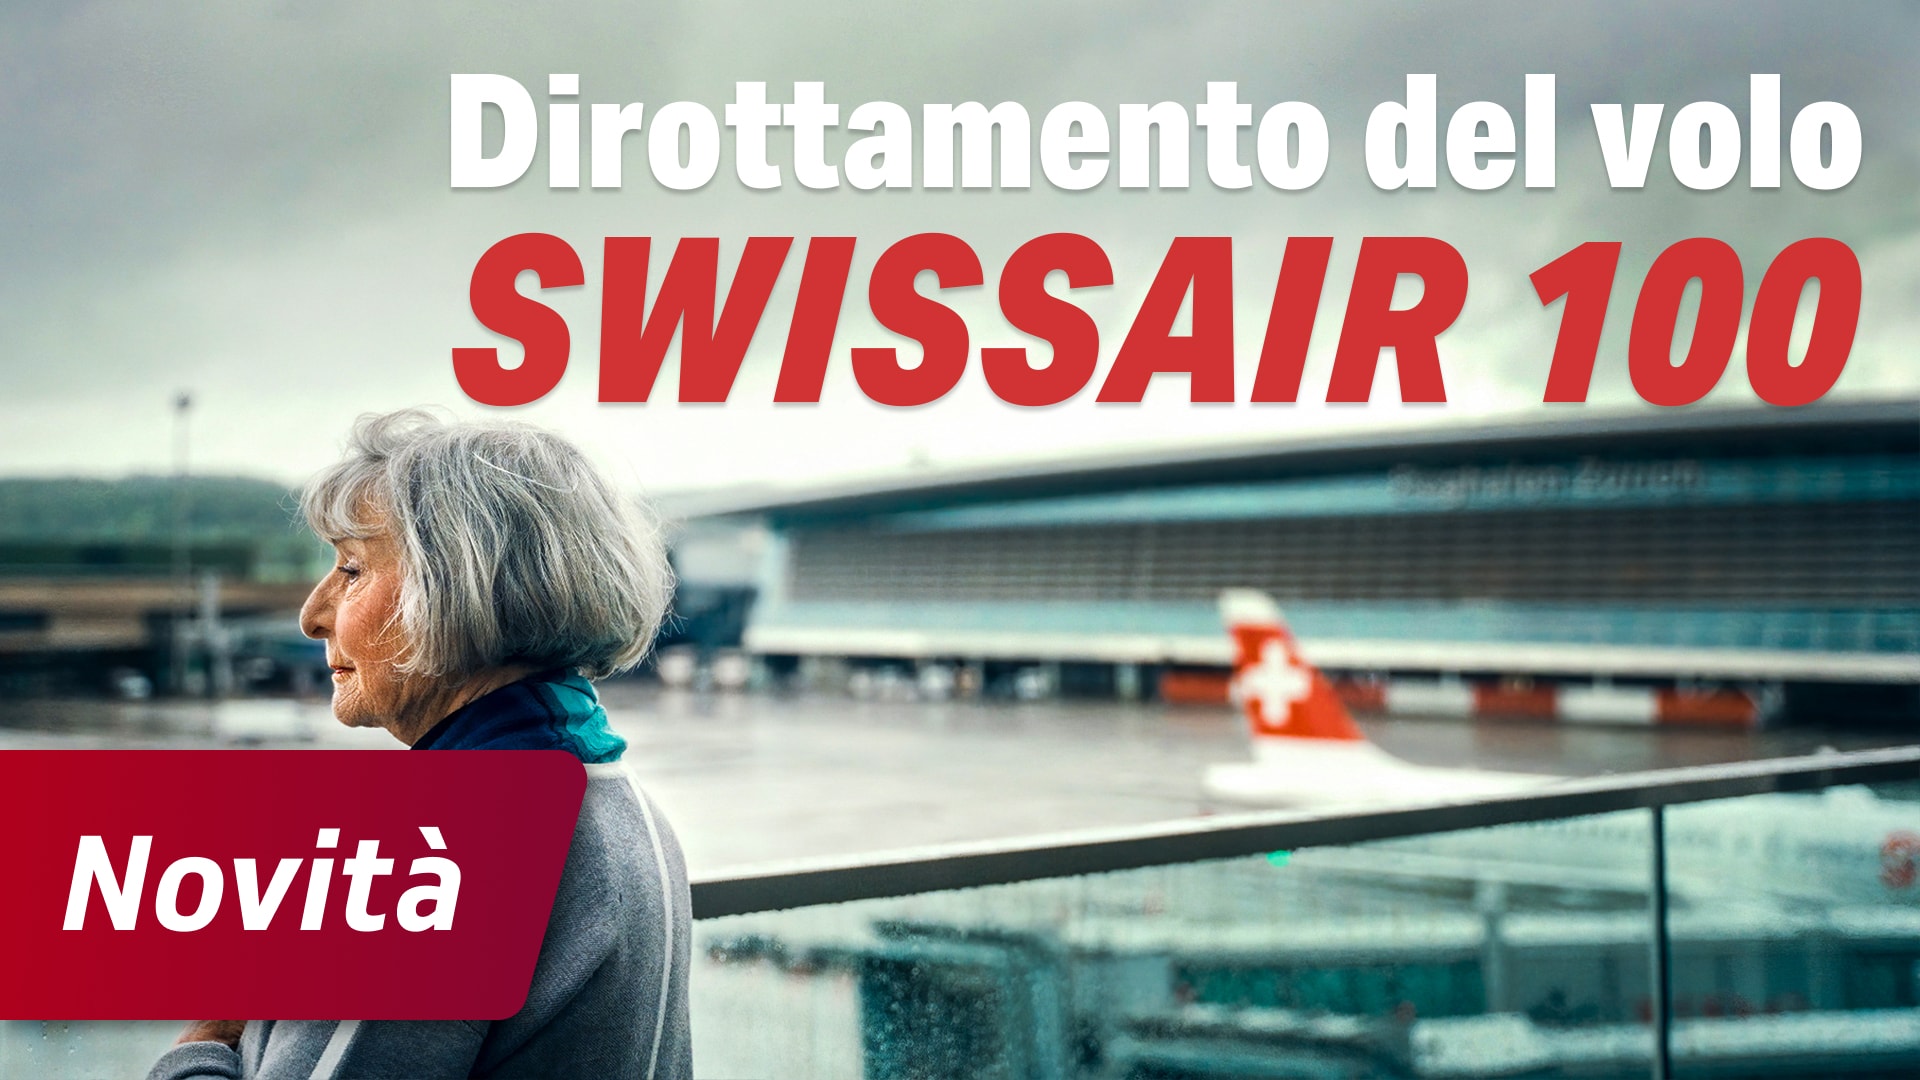 Dirottamento del volo Swissair 100